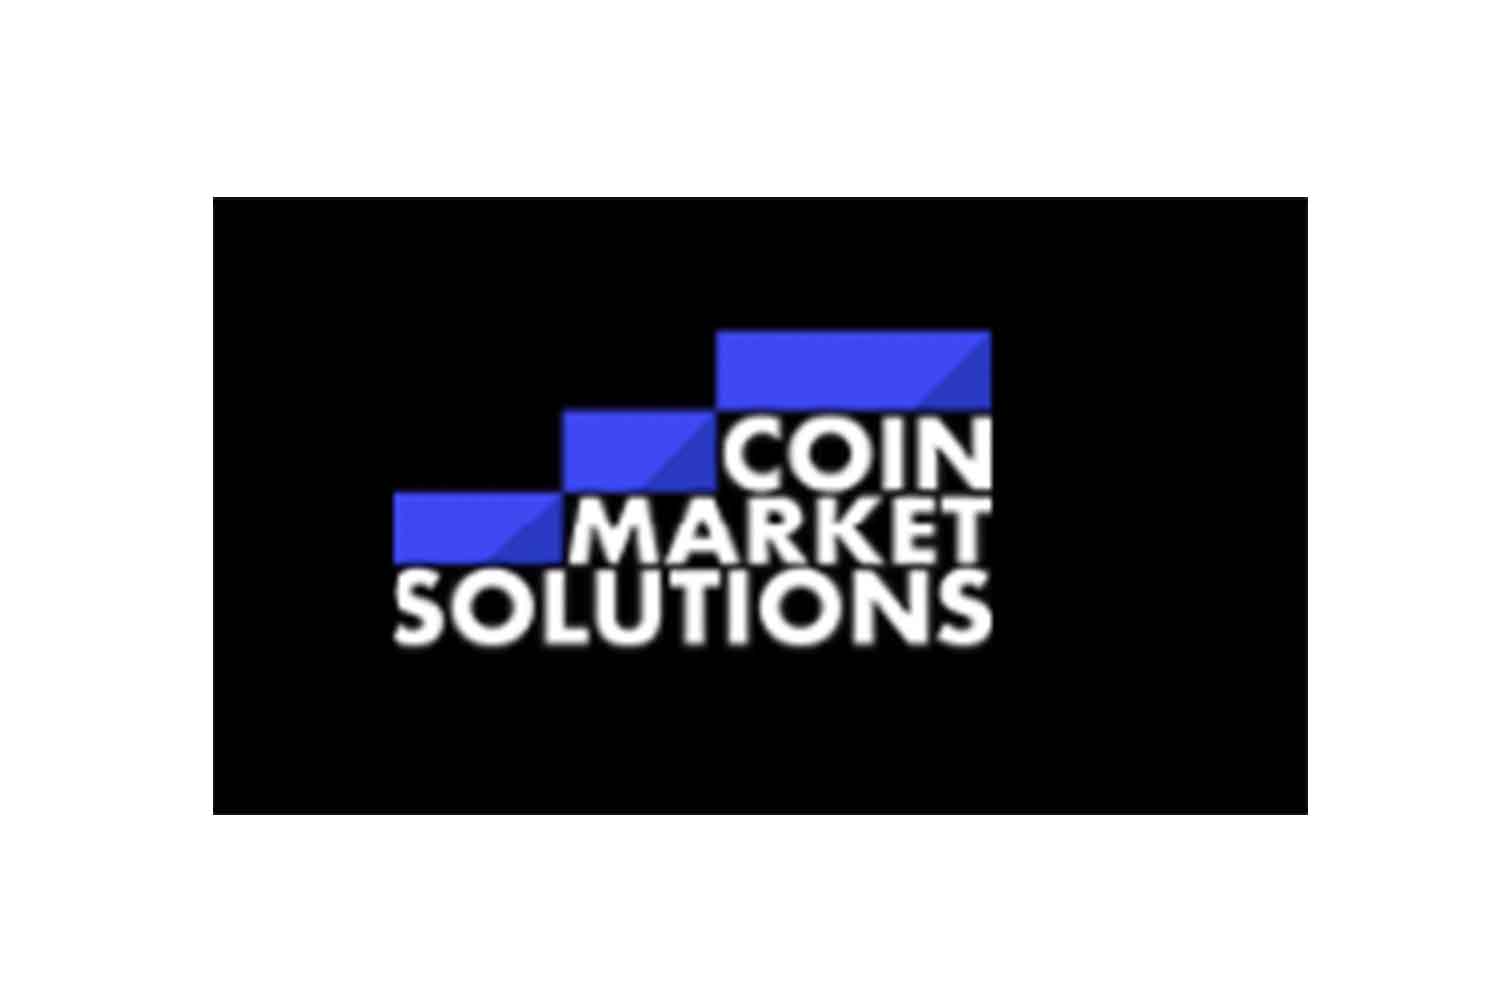 Детальный обзор биржи токенизированных активов Coin Market Solutions. Отзывы вкладчиков